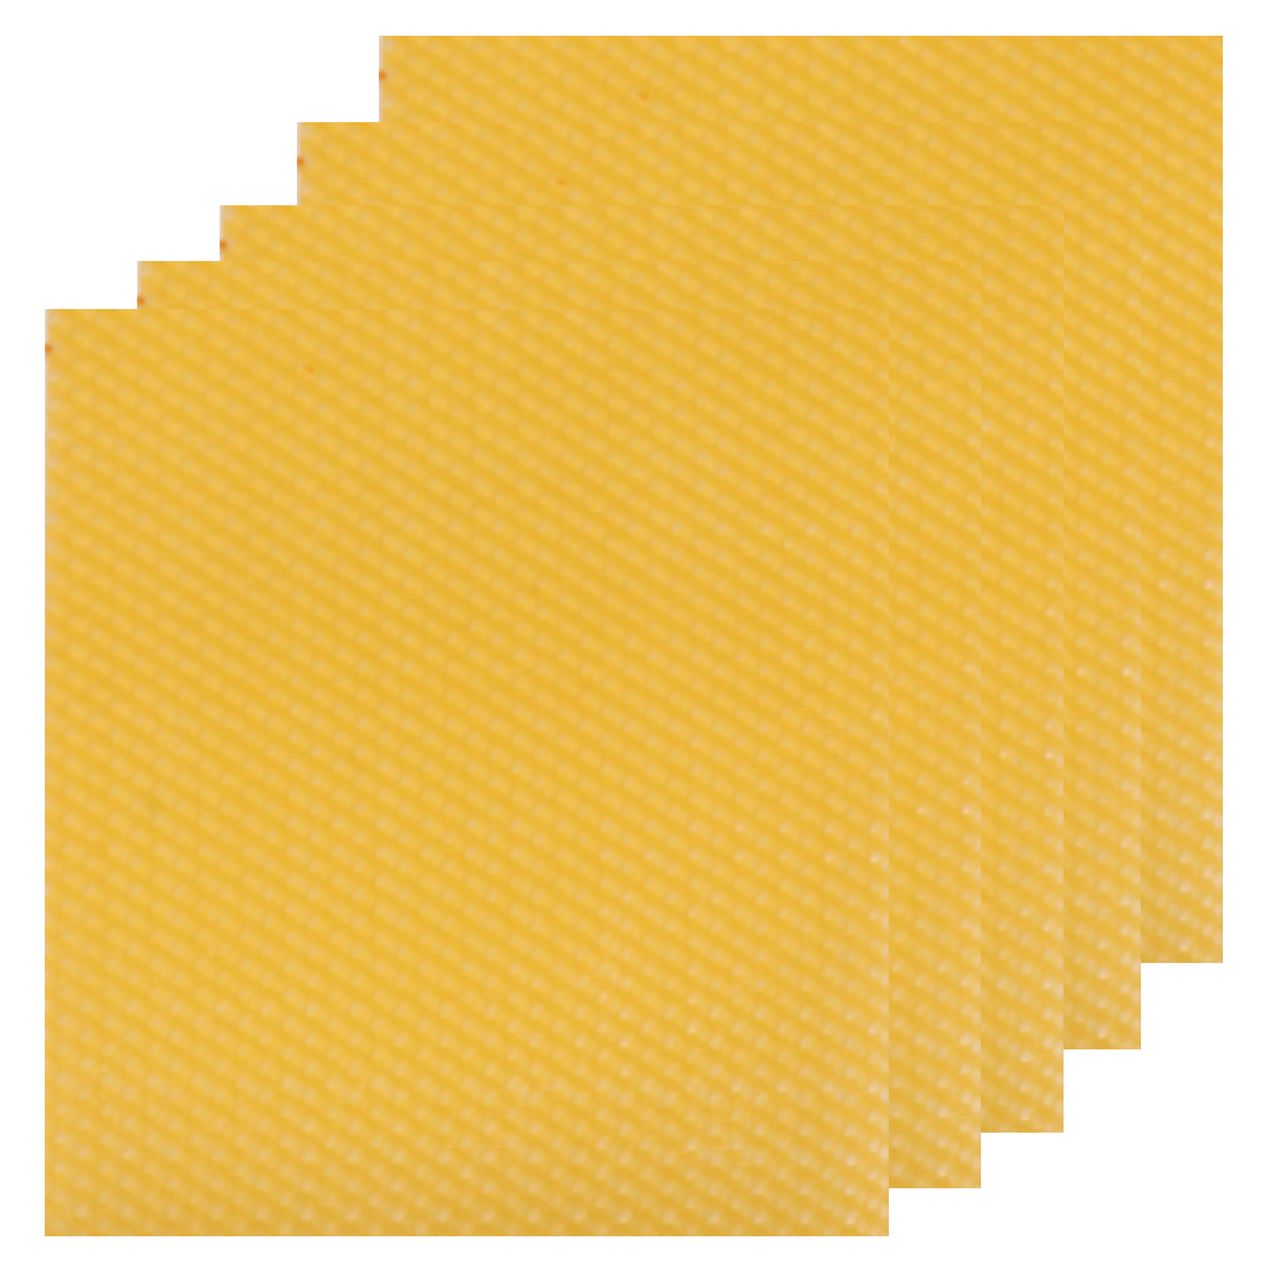 ورق موم عسل مدل بیزوکس مجموعه 5 عددی